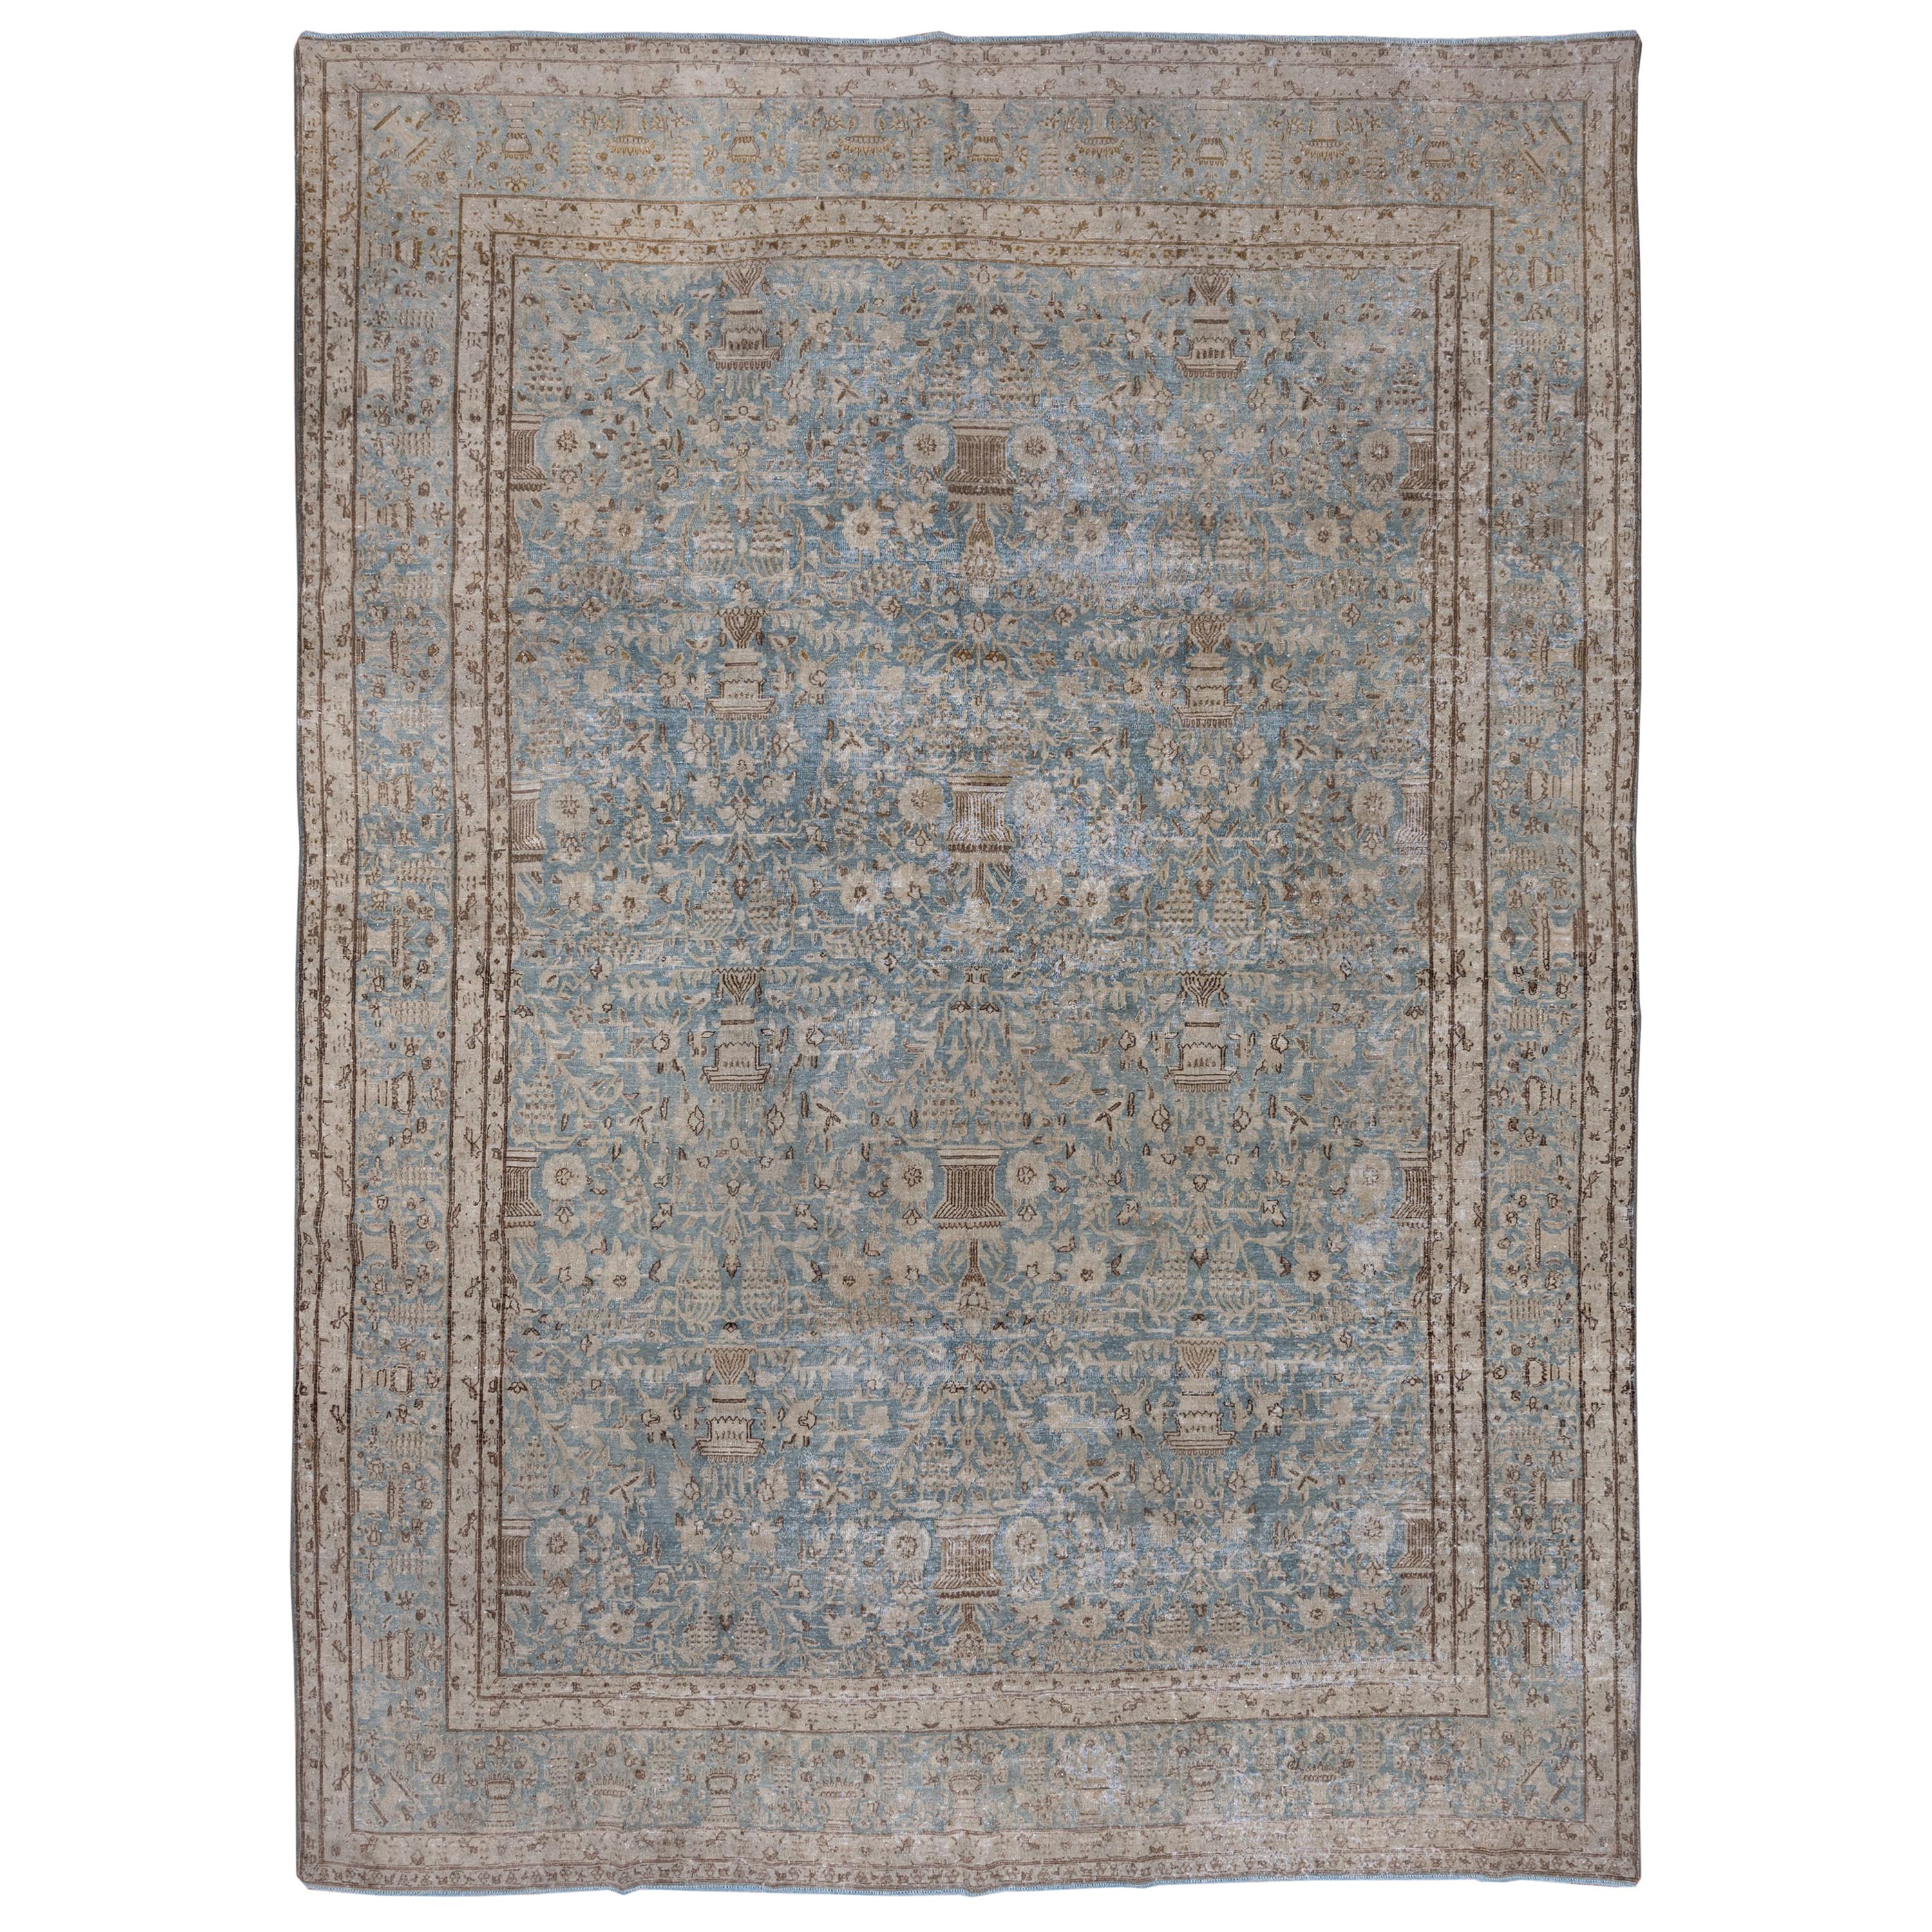 Hellblauer antiker persischer Kerman-Teppich mit Vasendesign, Allover Field